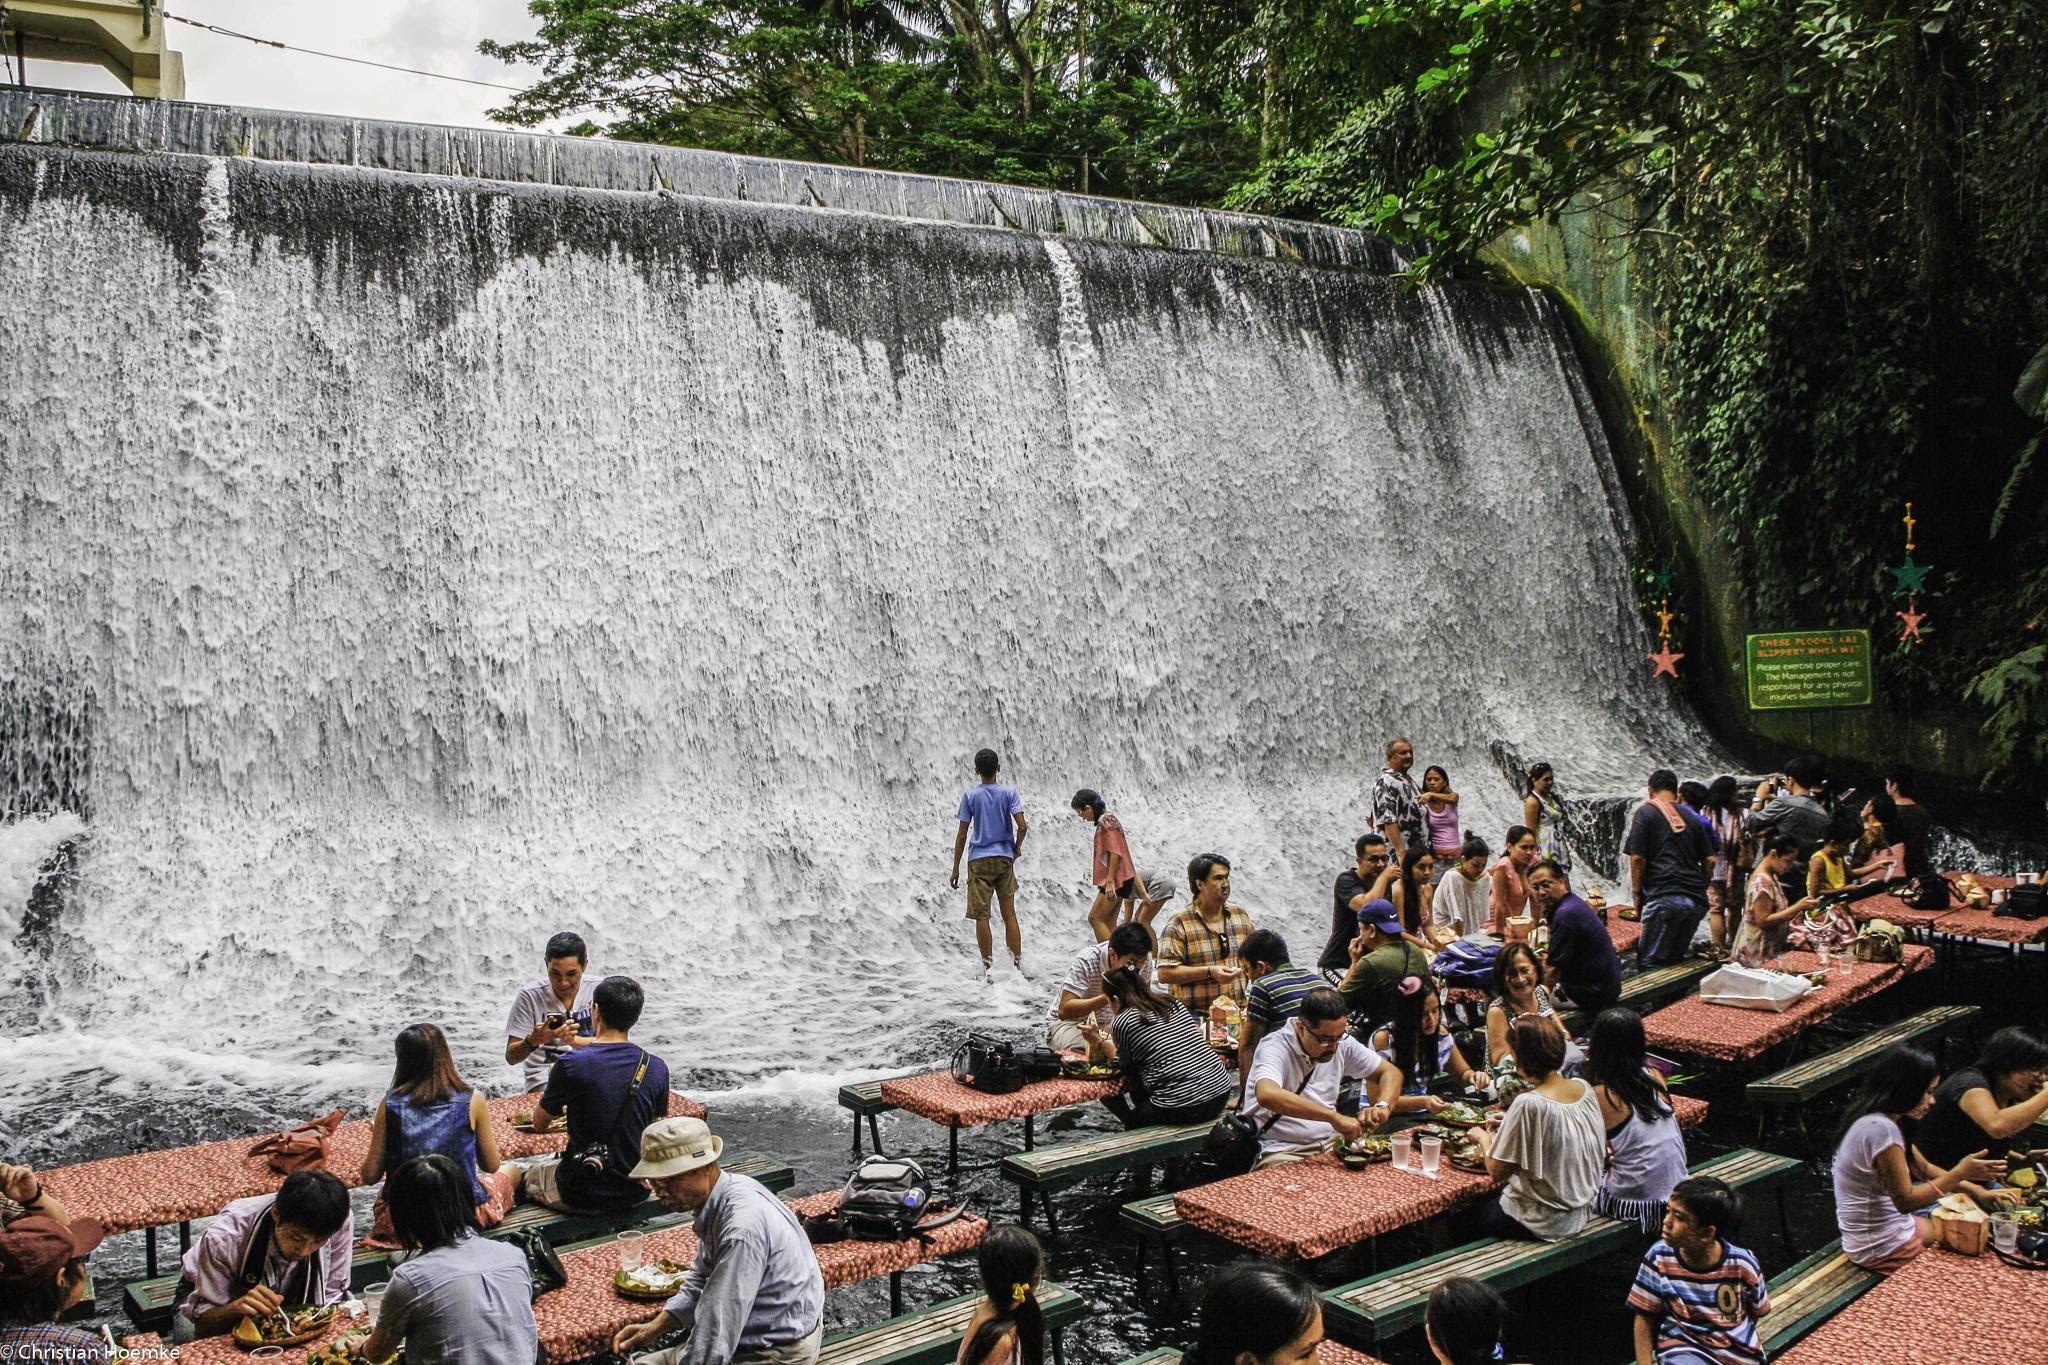 Ăn ngon thêm vạn lần với nhà hàng dưới chân thác độc lạ ở Philippines - 6